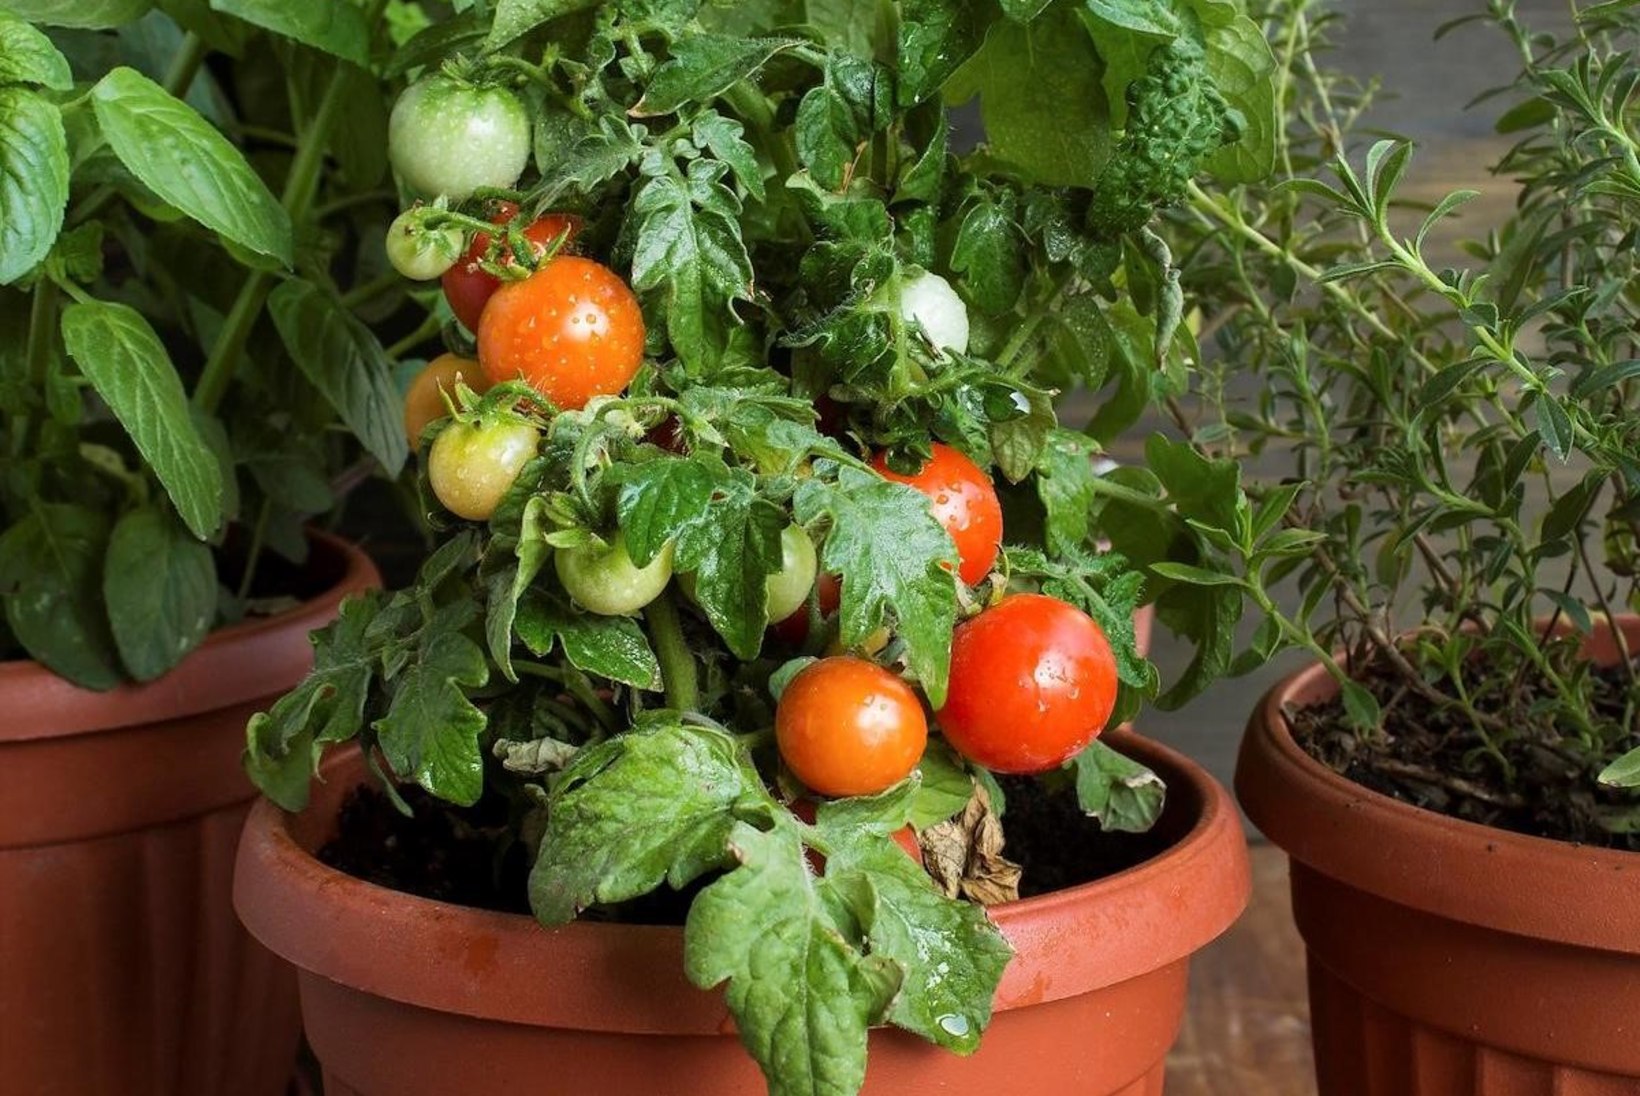 Müüt või tõde: tomat annab saaki üksnes kasvuhoones?